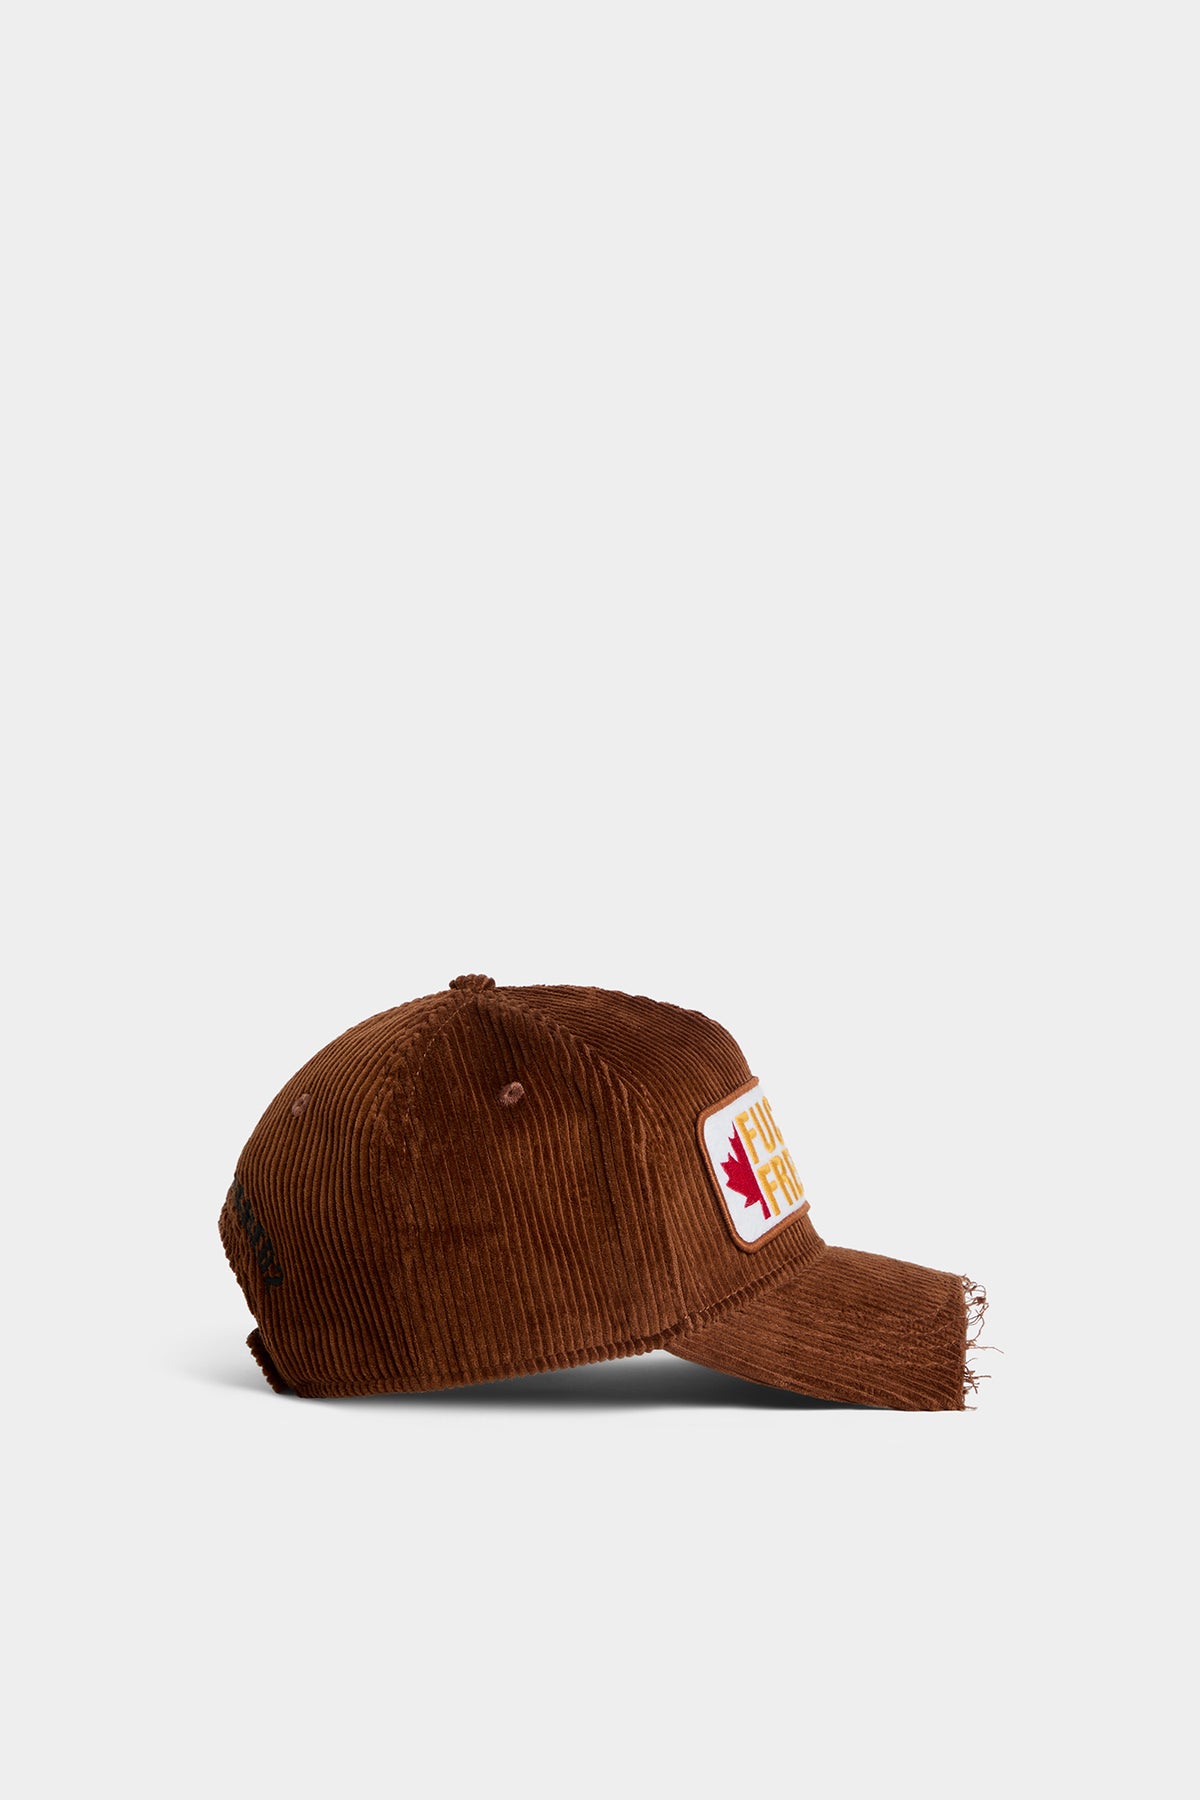 Souvenir From Canada Baseball Cap